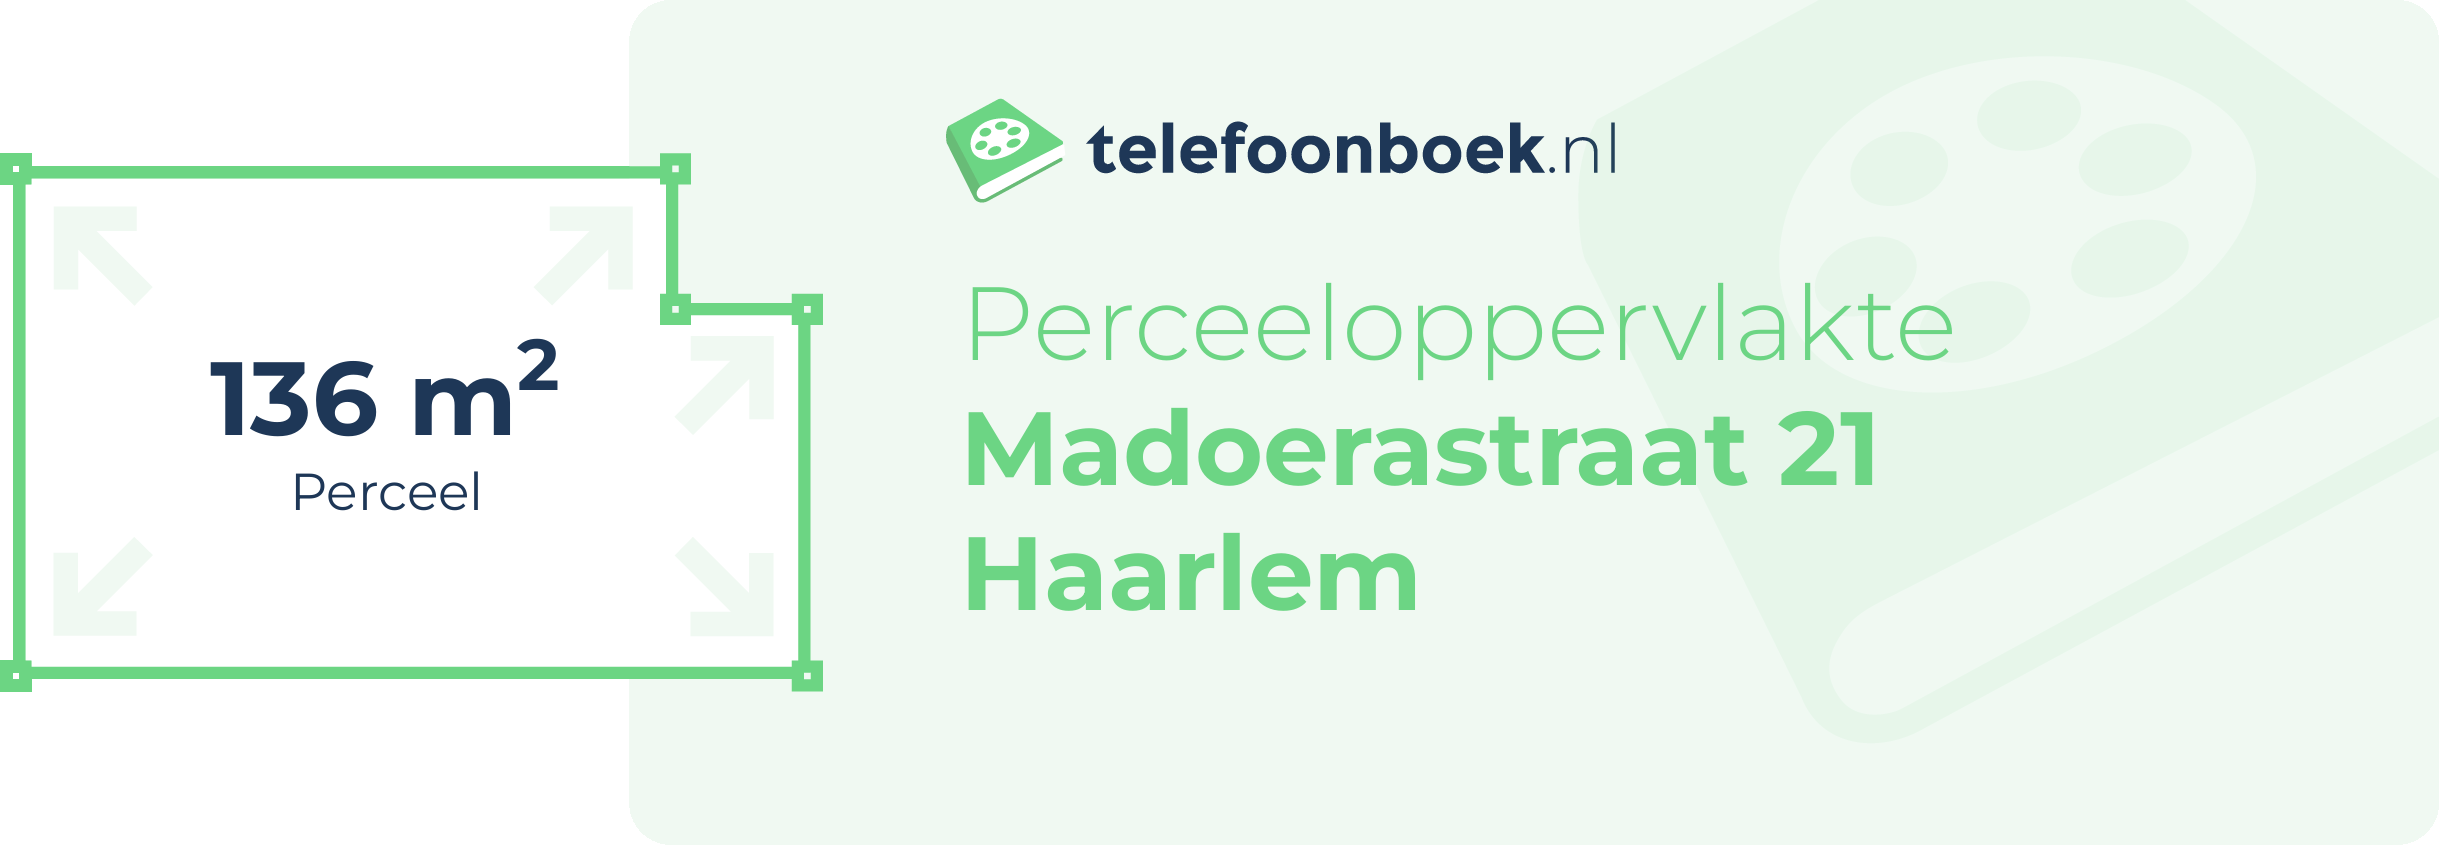 Perceeloppervlakte Madoerastraat 21 Haarlem